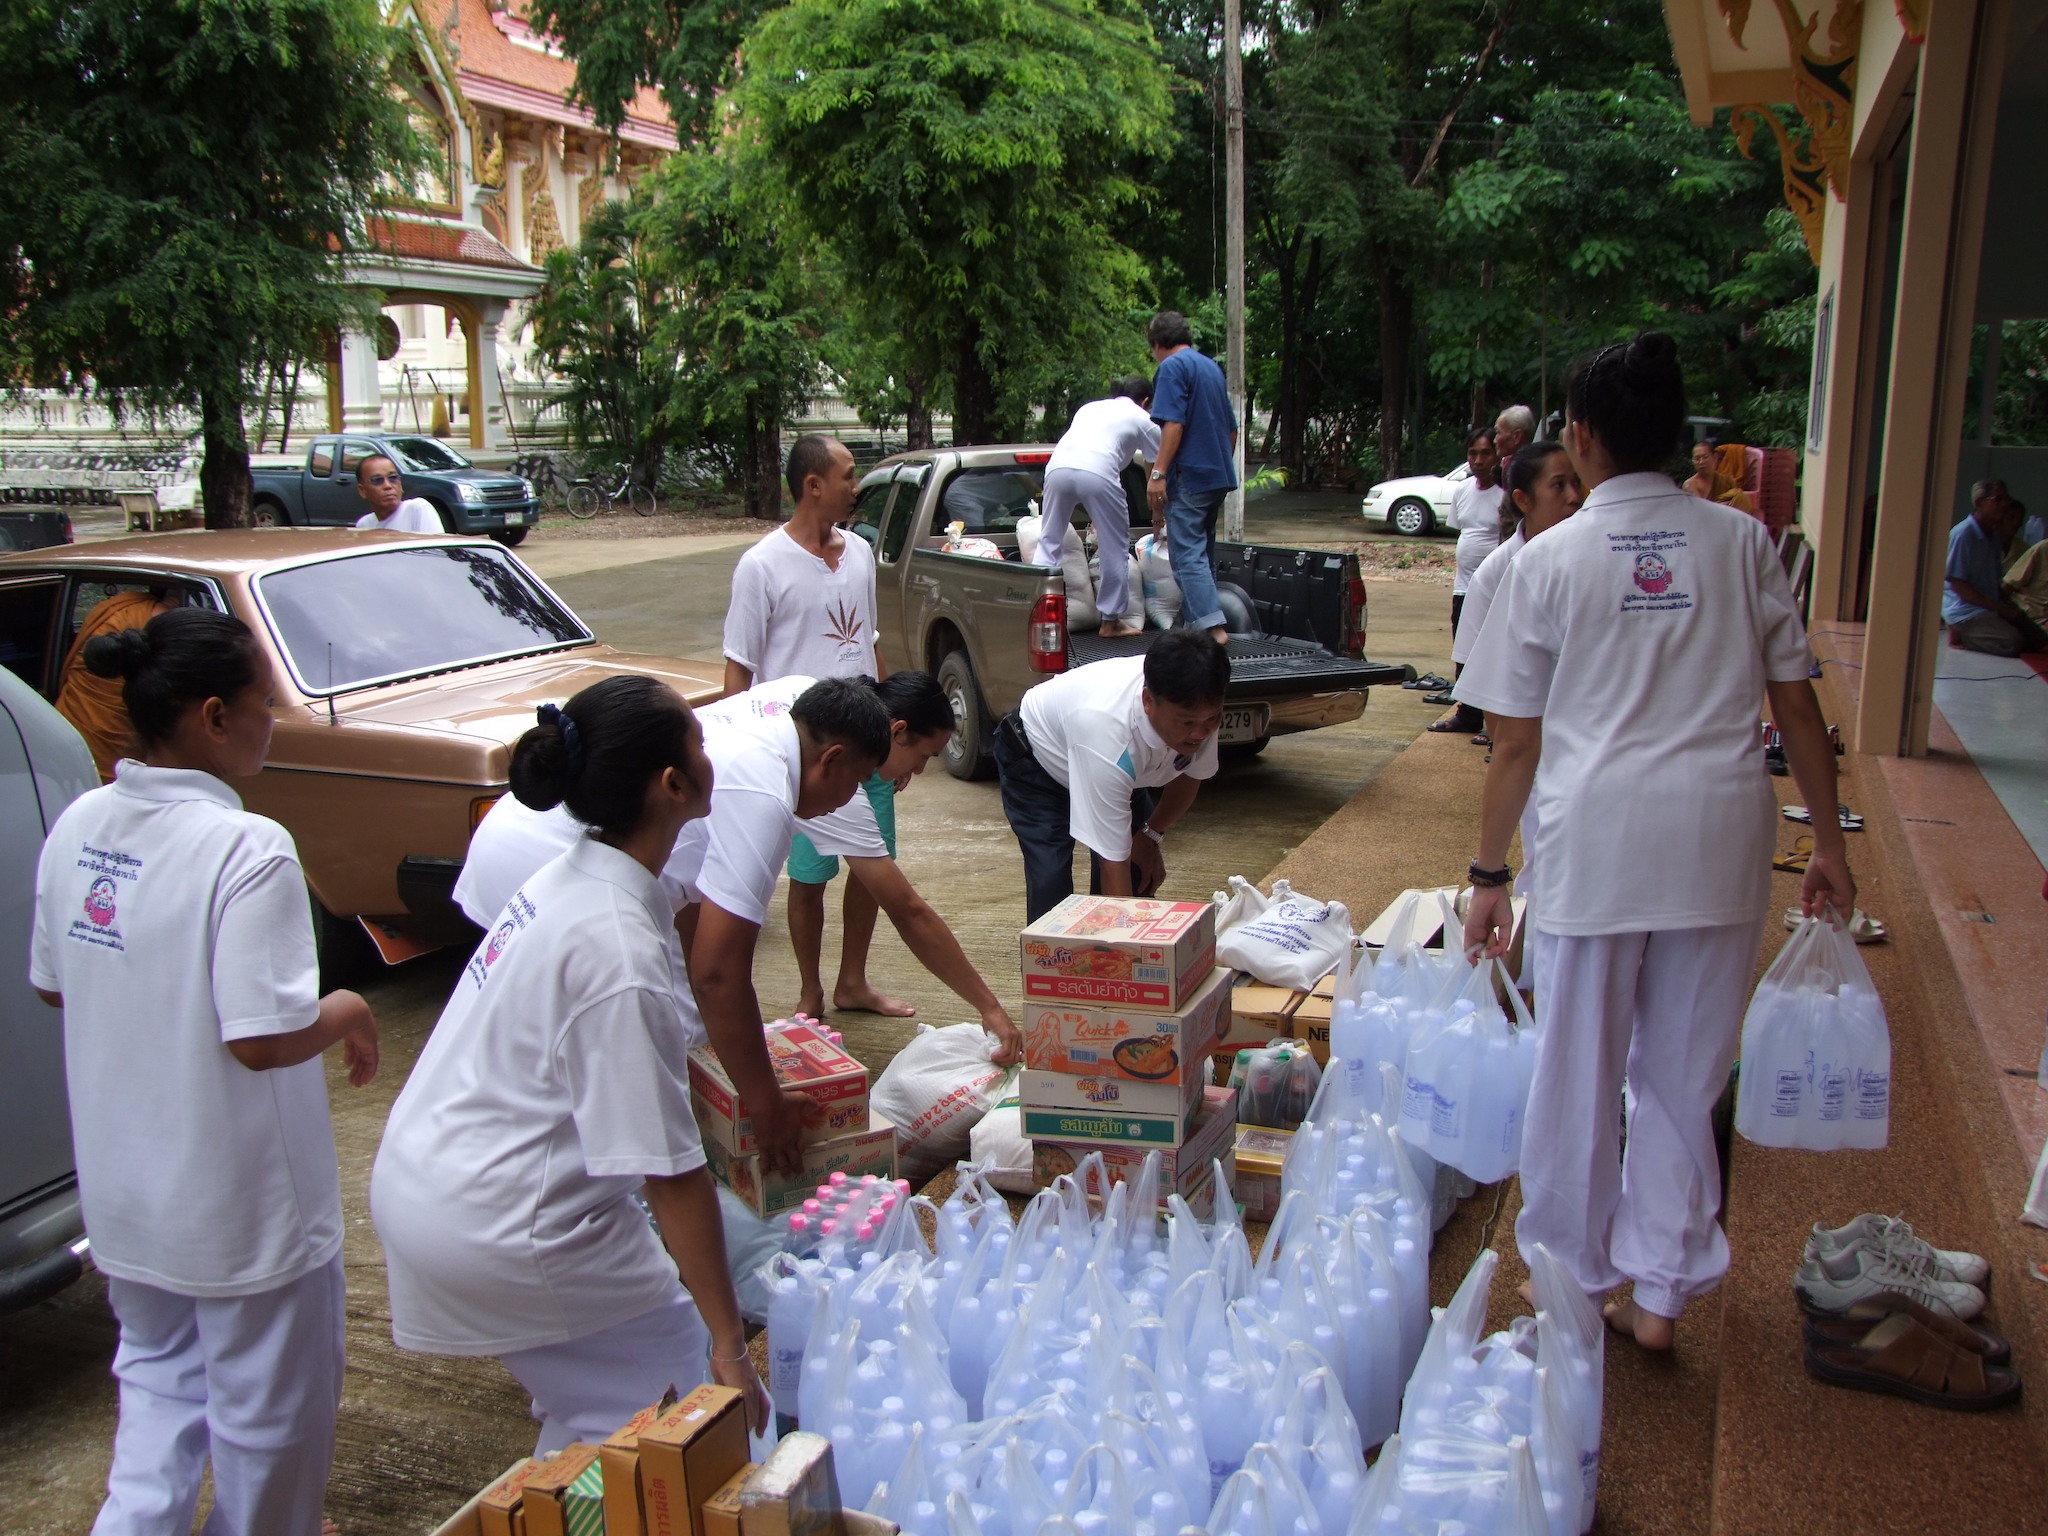 โครงการช่วยผู้ประสบภัยน้ำท่วมจังหวัดขอนแก่นครั้งที่ 1    วันที่ 3 ตุลาคม 2554 ณ วัดป่าศิริวันวนาราม  ต.ในเมือง  อ.เมือง  จังหวัดขอนแก่น (ช่วยพระและประชาชนที่ถูกน้ำท่วมในตำบลพระลับ)